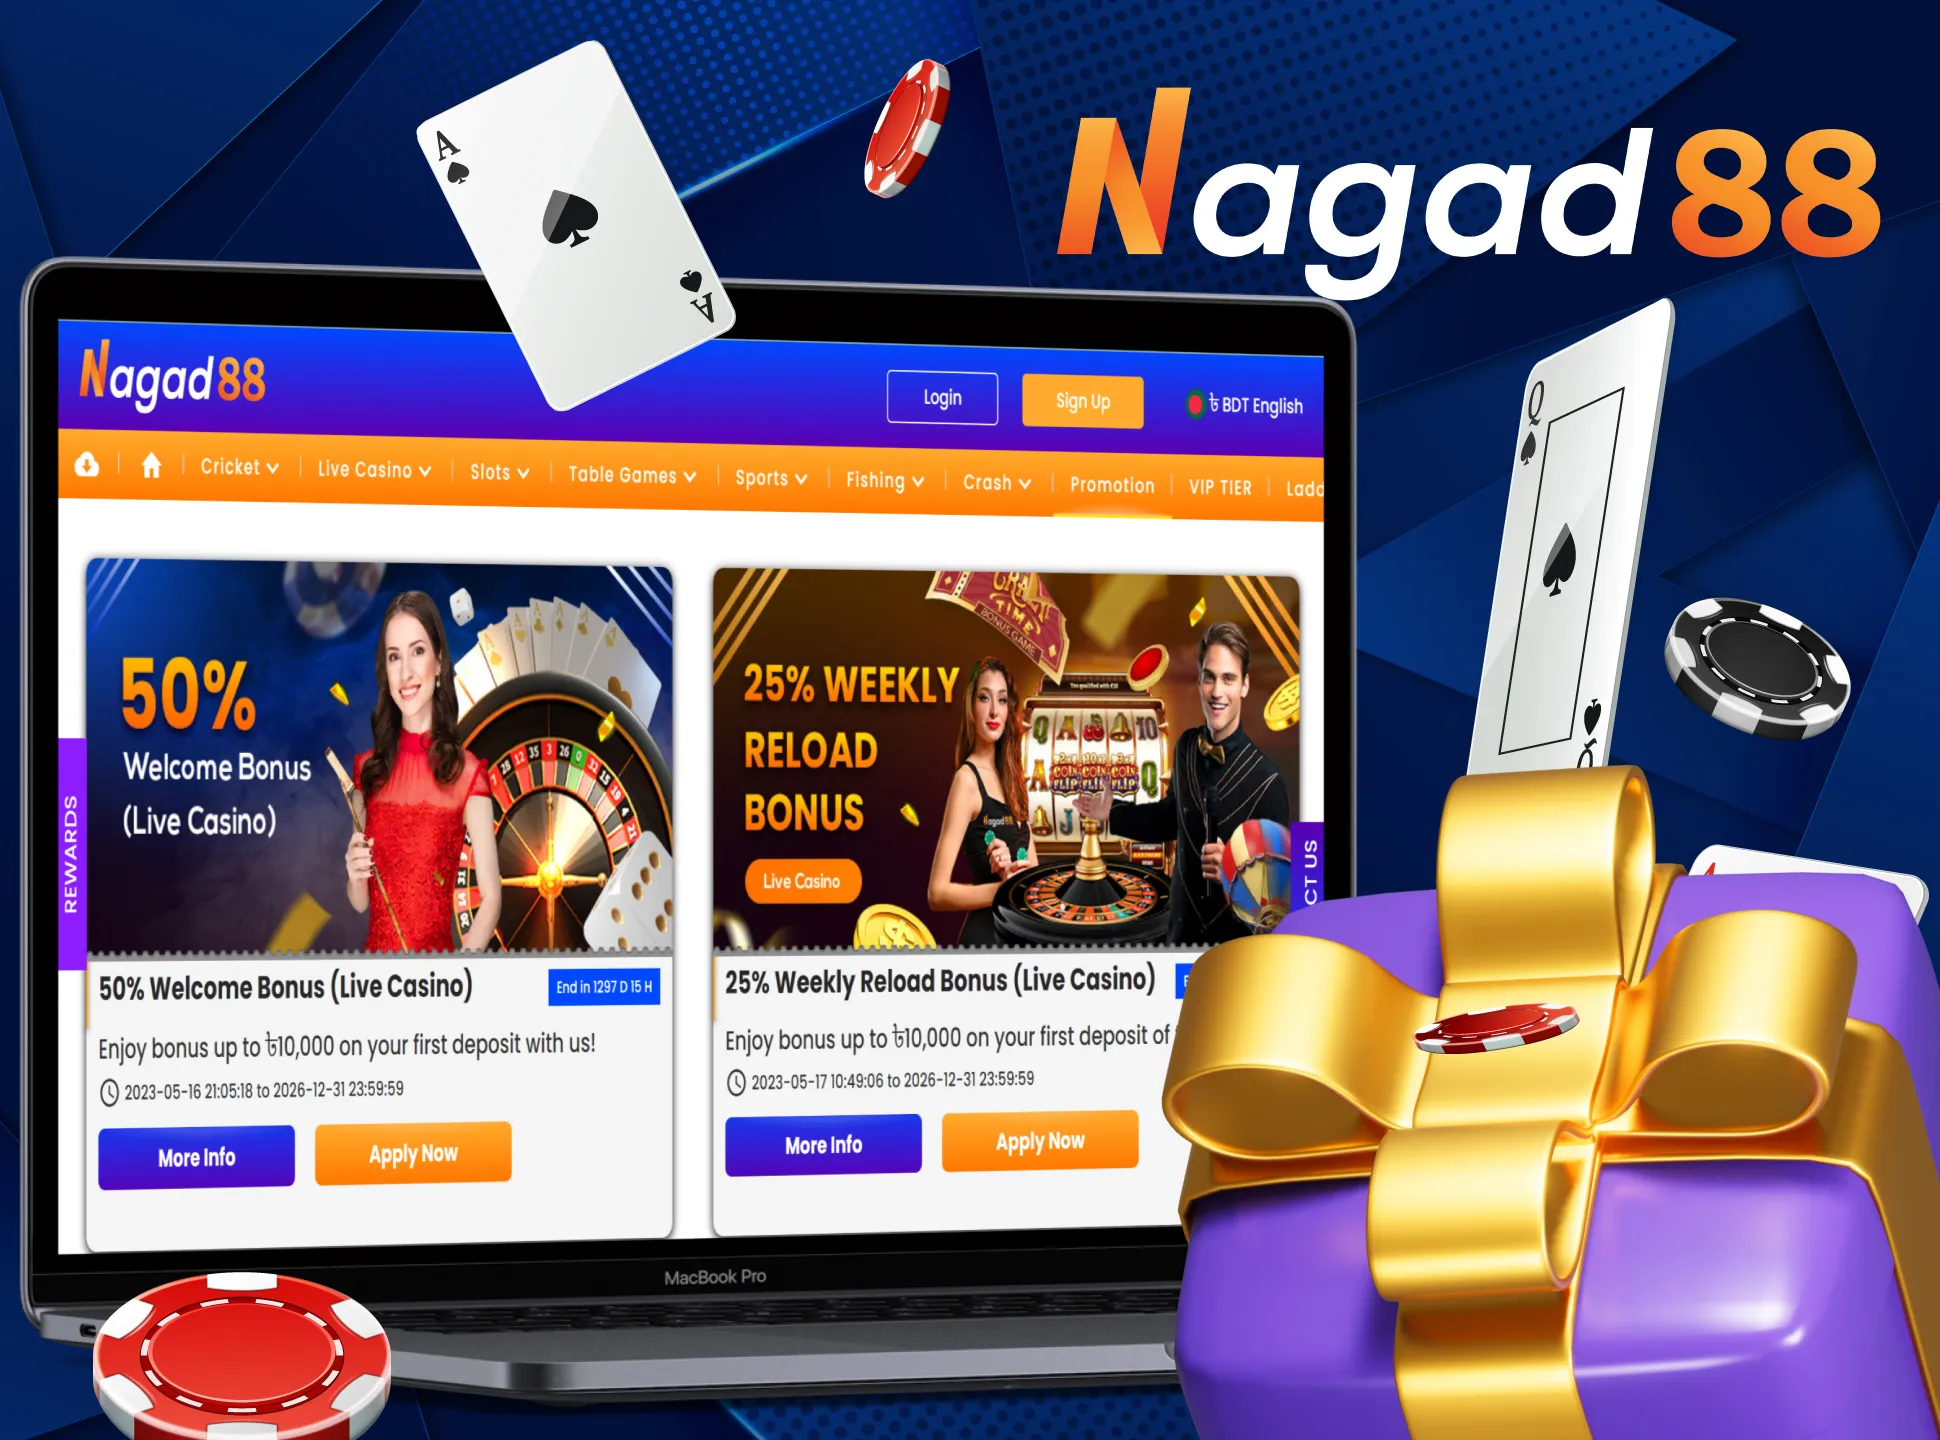 Casino bonus will give an advantage at Nagad88.